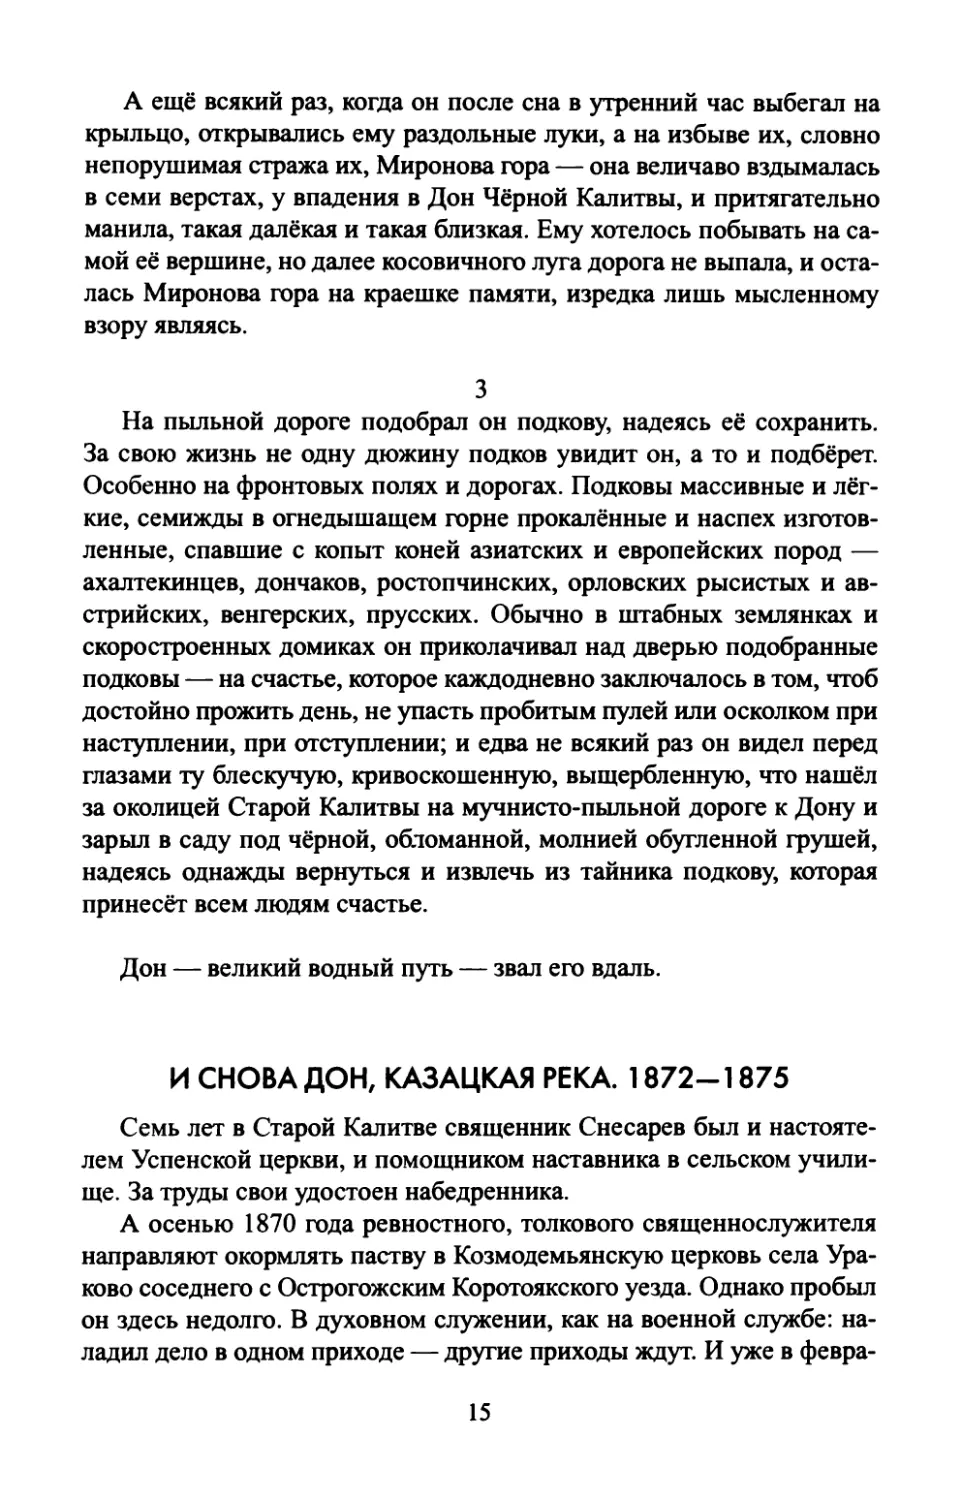 И  СНОВА  ДОН,  КАЗАЦКАЯ  РЕКА.  1872—1875